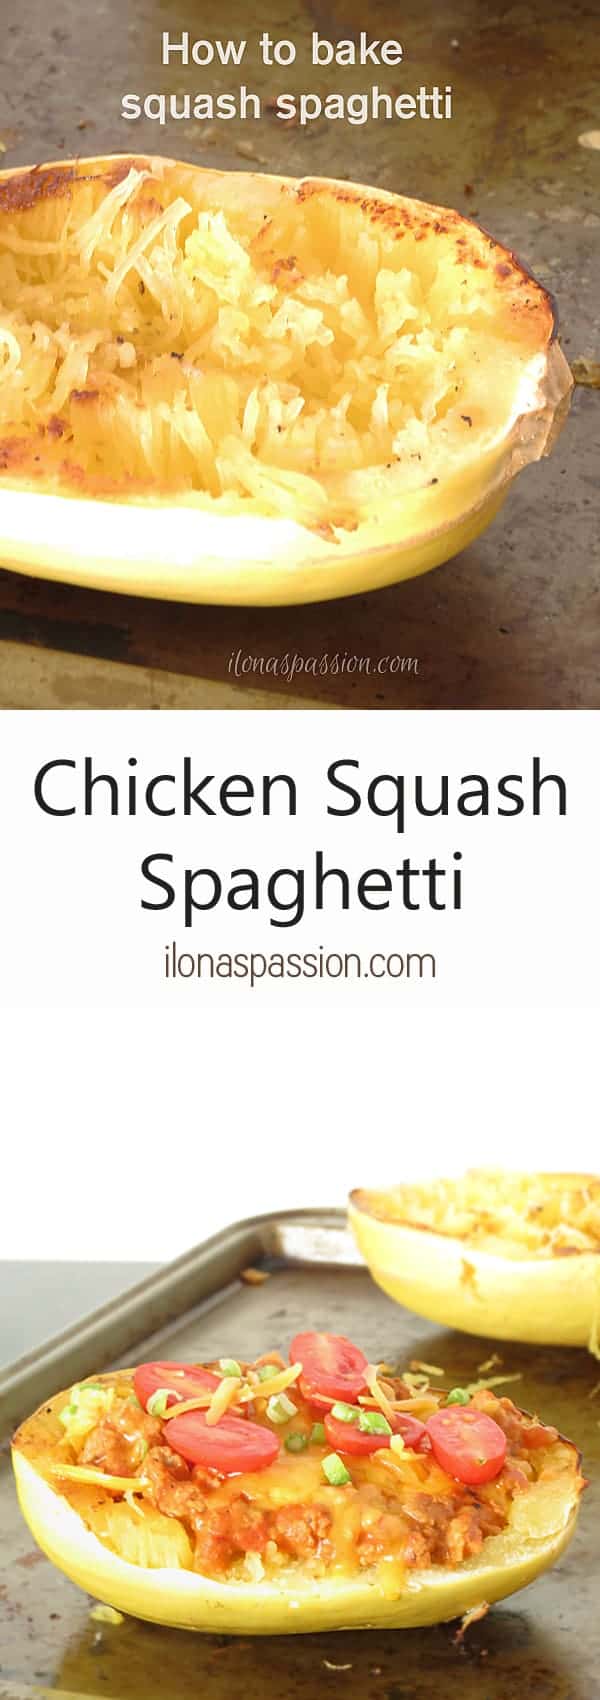 The Best Chicken Squash Spaghetti by ilonaspassion.com